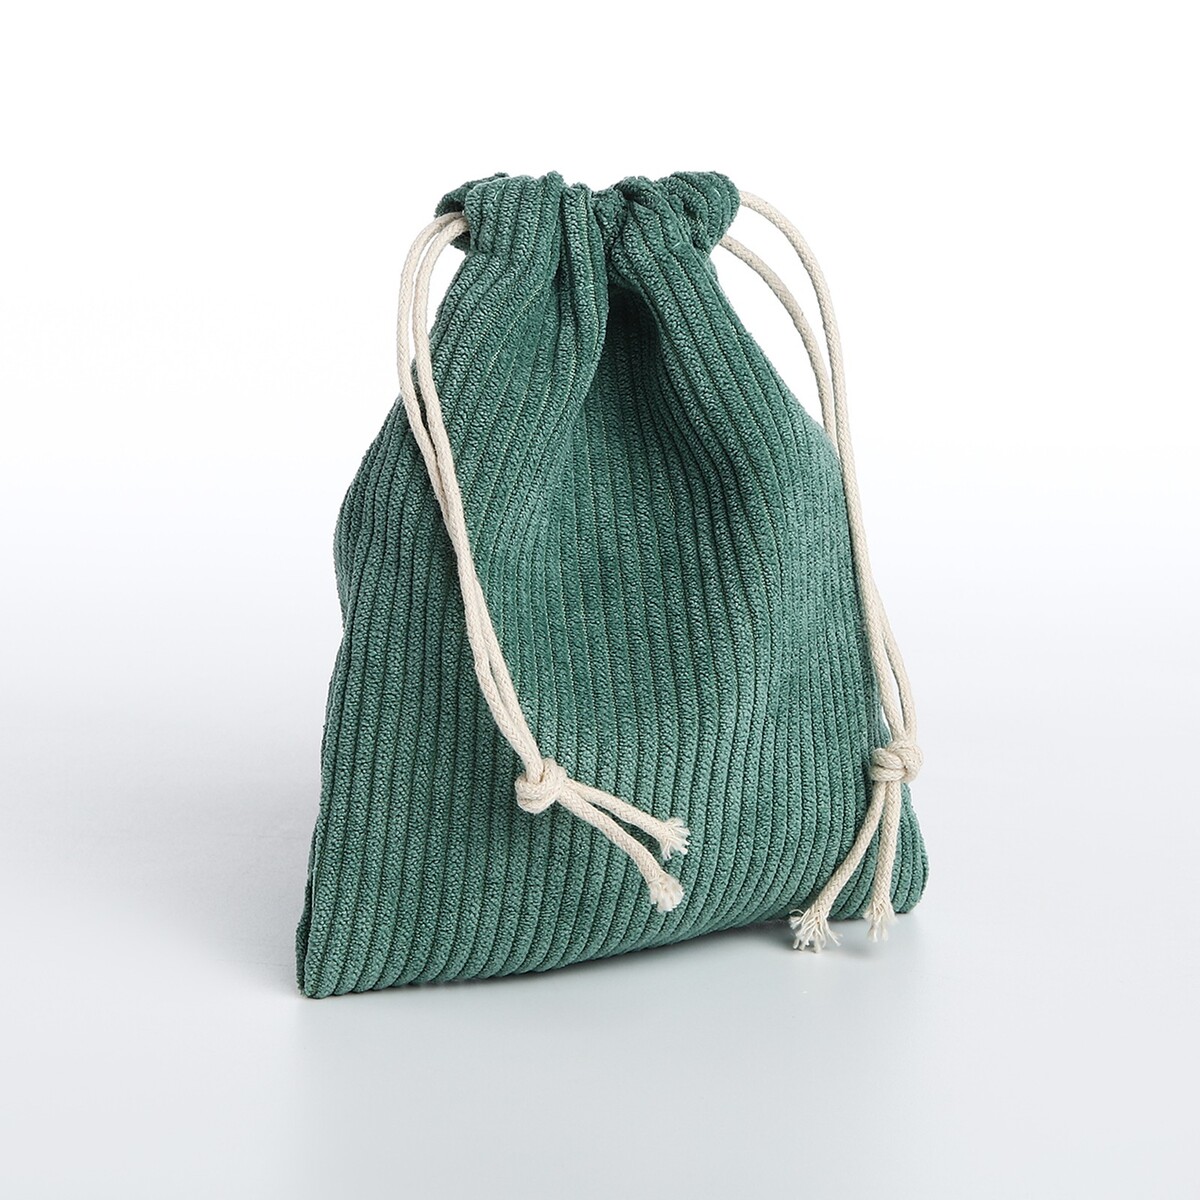 Косметичка - мешок с завязками, цвет зеленый